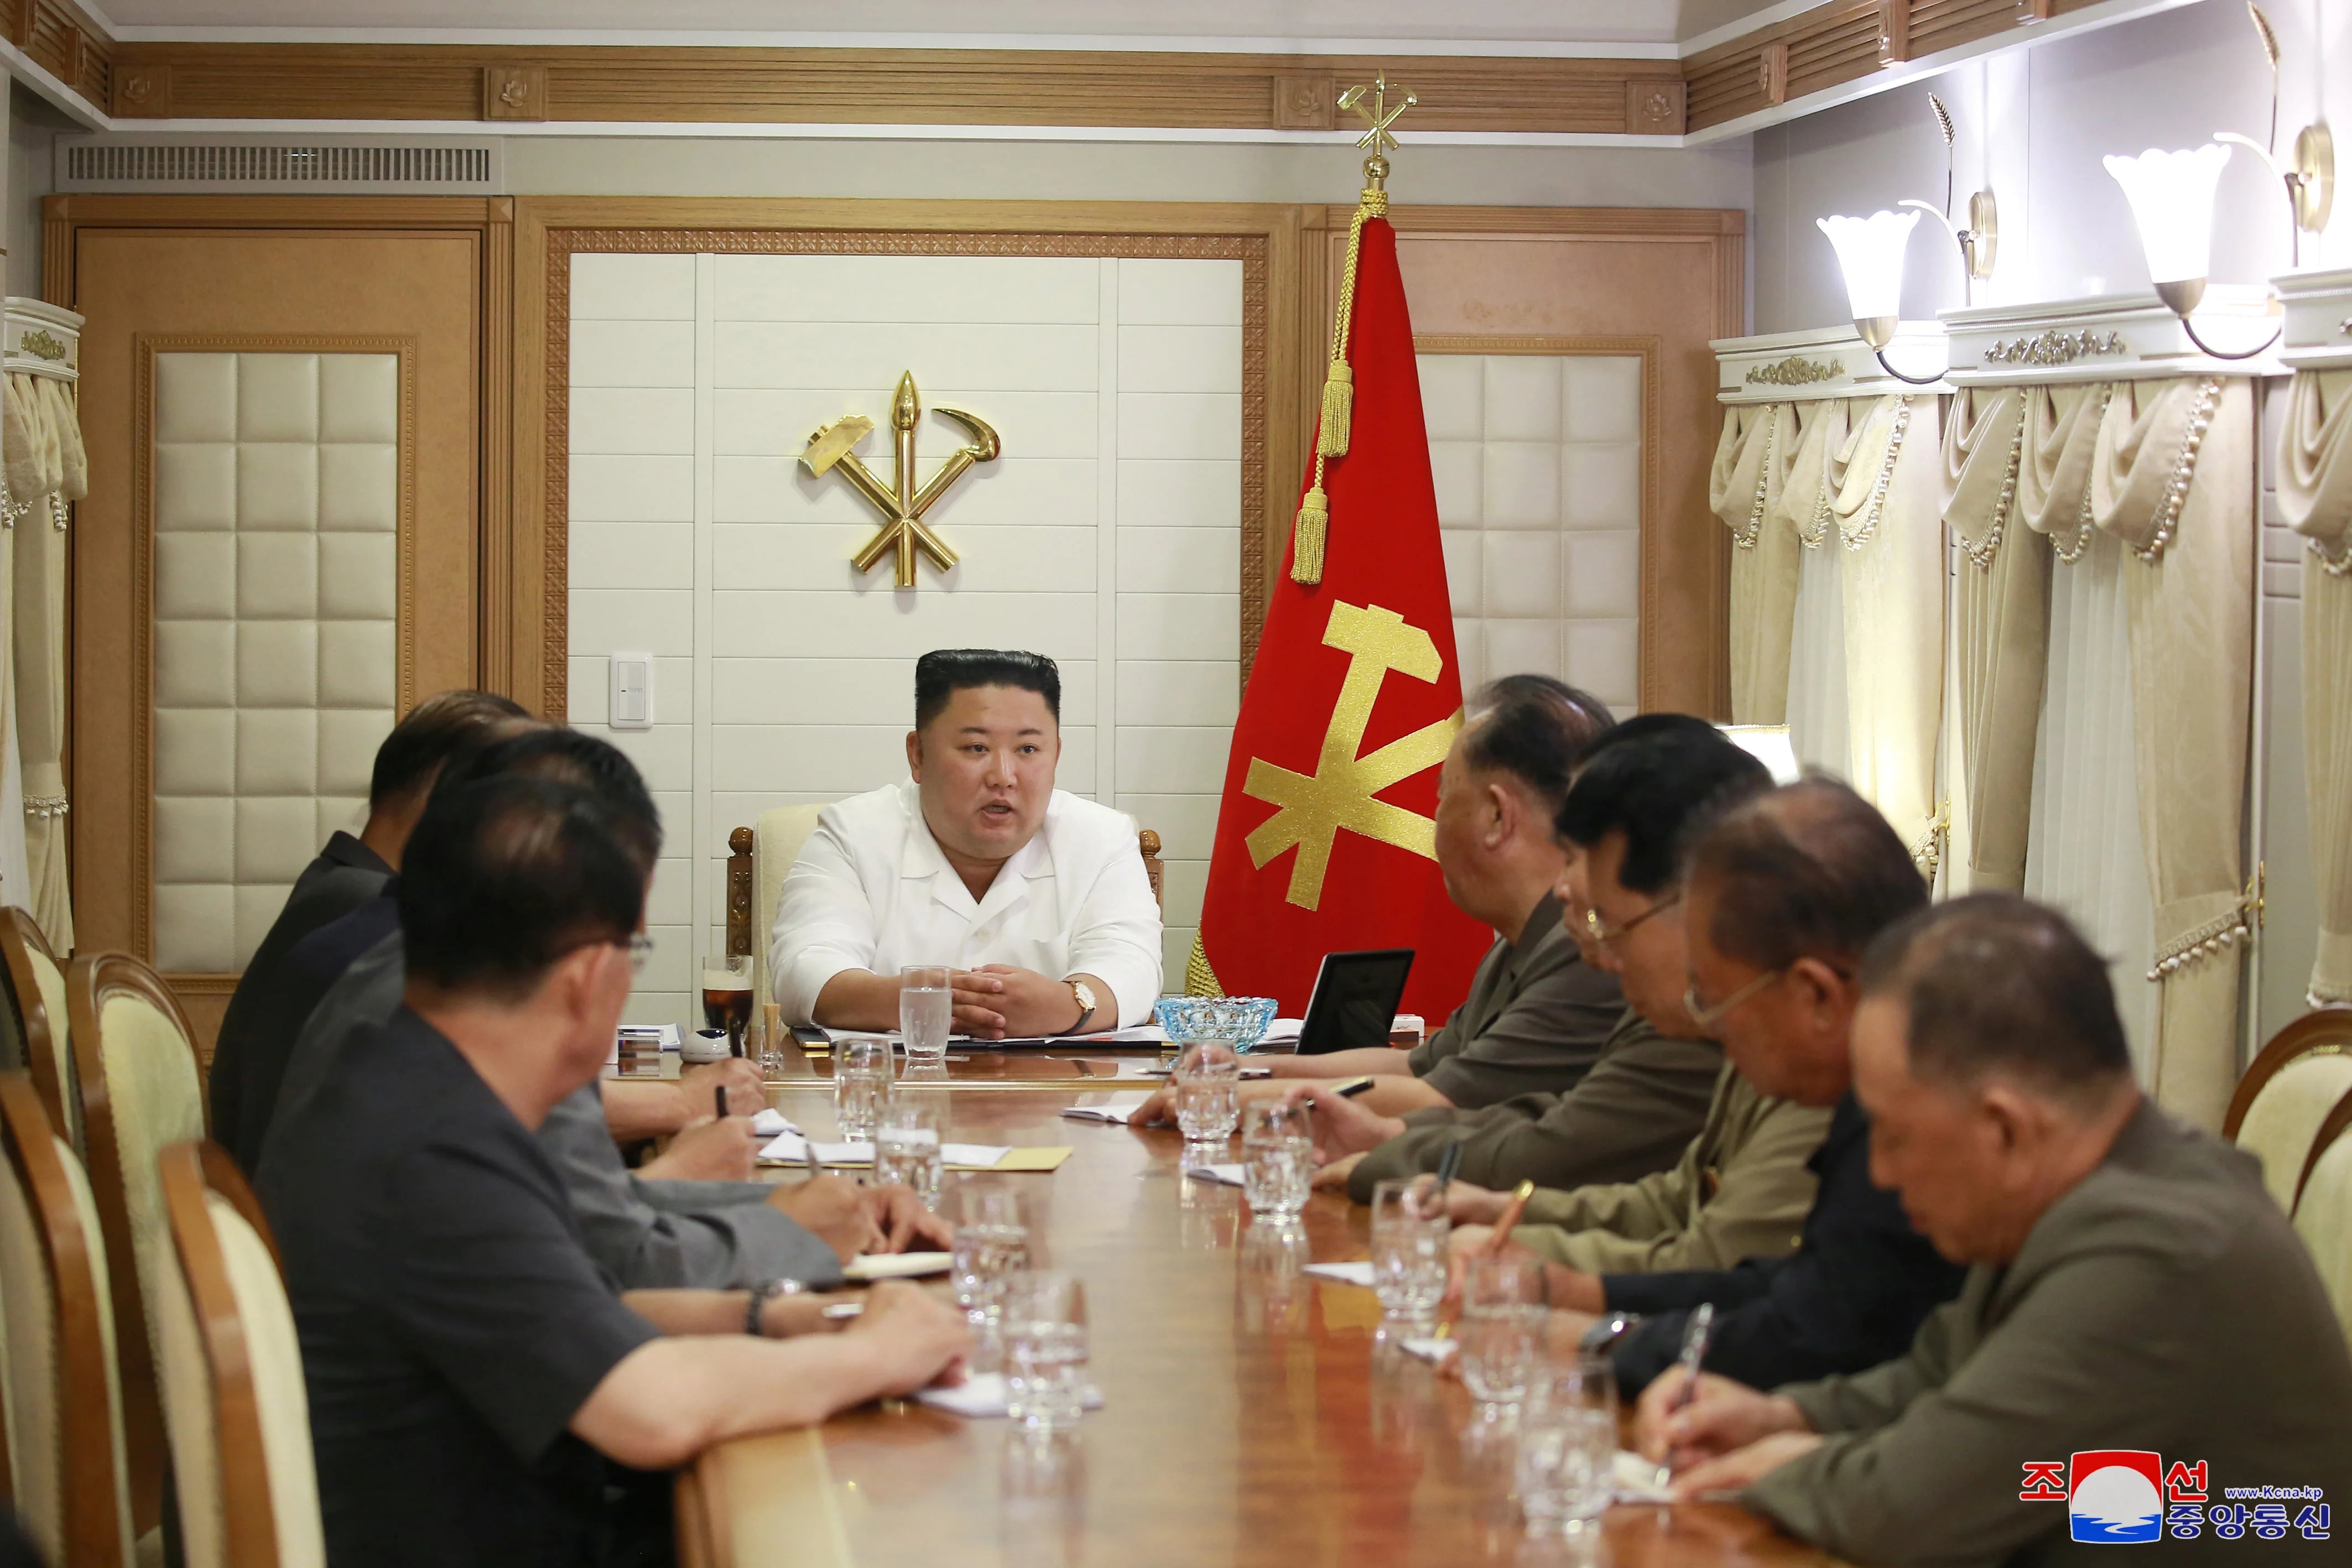 El dictador norcoreano Kim Jong-un asiste a una reunión en Pyongyang en esta imagen publicada el 5 de septiembre de 2020 por la Agencia Central de Noticias de Corea del Norte (KCNA via REUTERS)